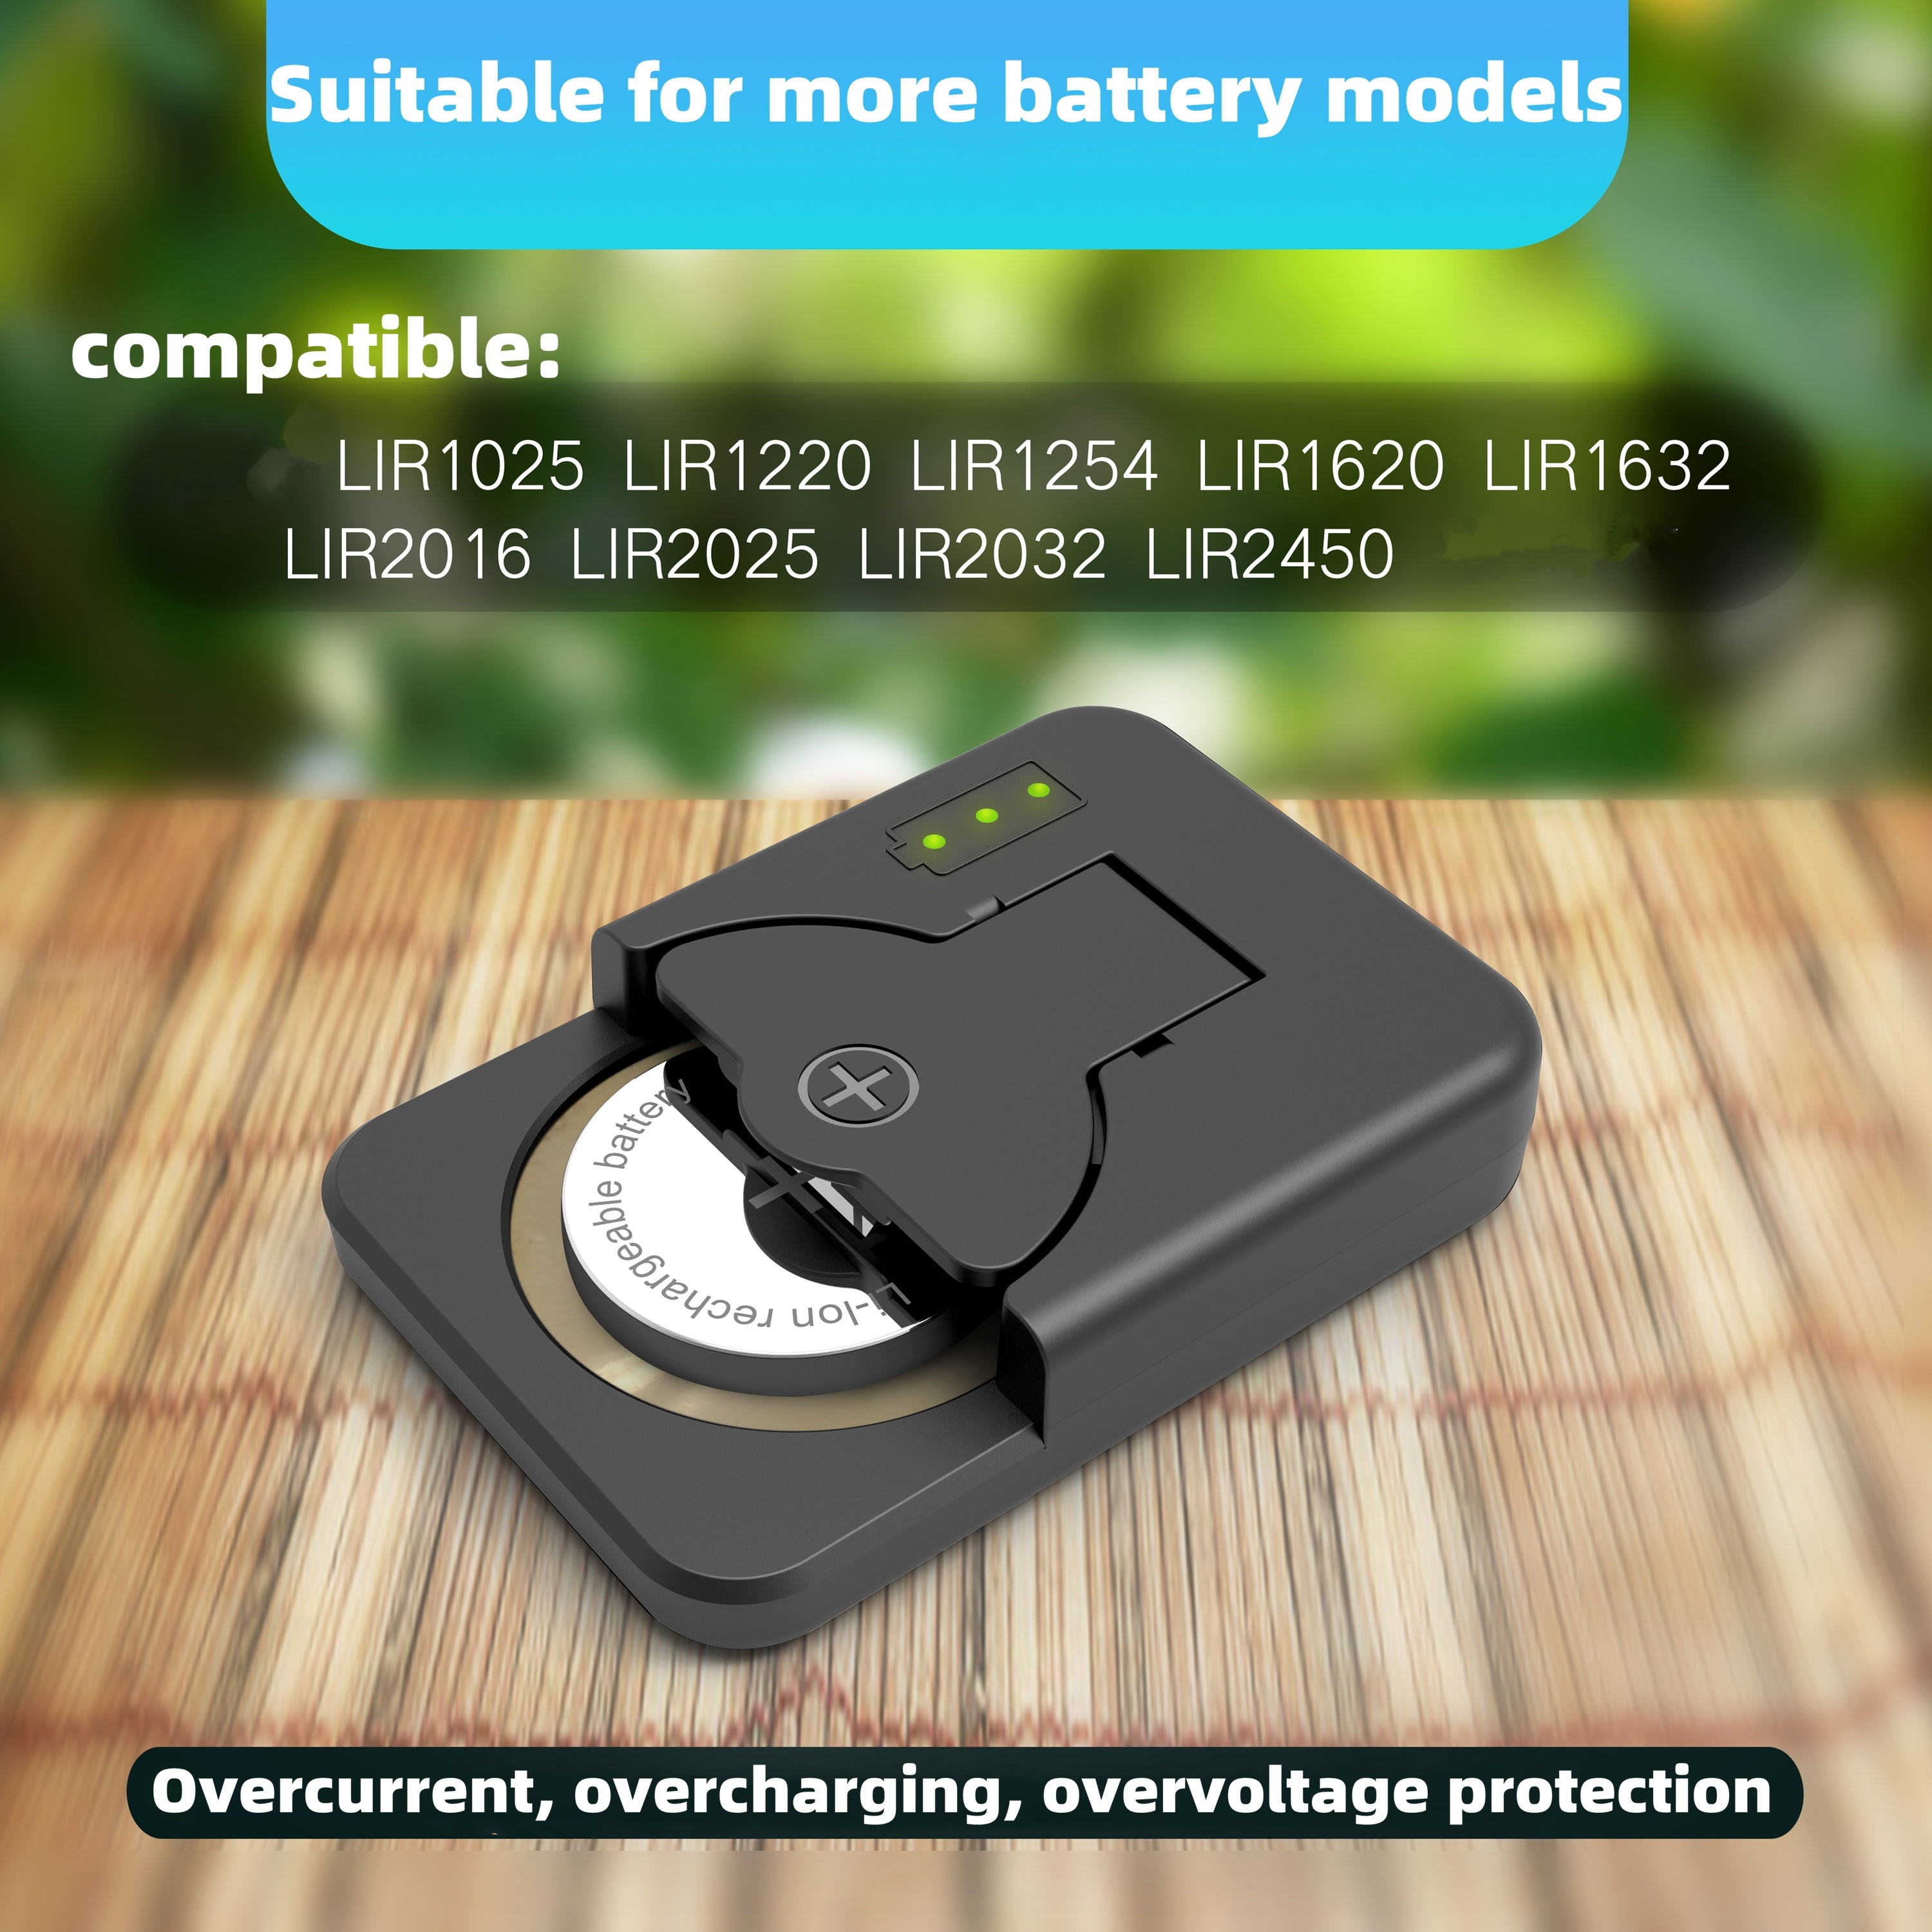 

Button Battery Charger For Lir1025 Lir1220 Lir1254 Lir1620 Lir2016 Lir2025 Lir2032 Lir2450 With Type-c Charging Interface Convenient Use Wide Application